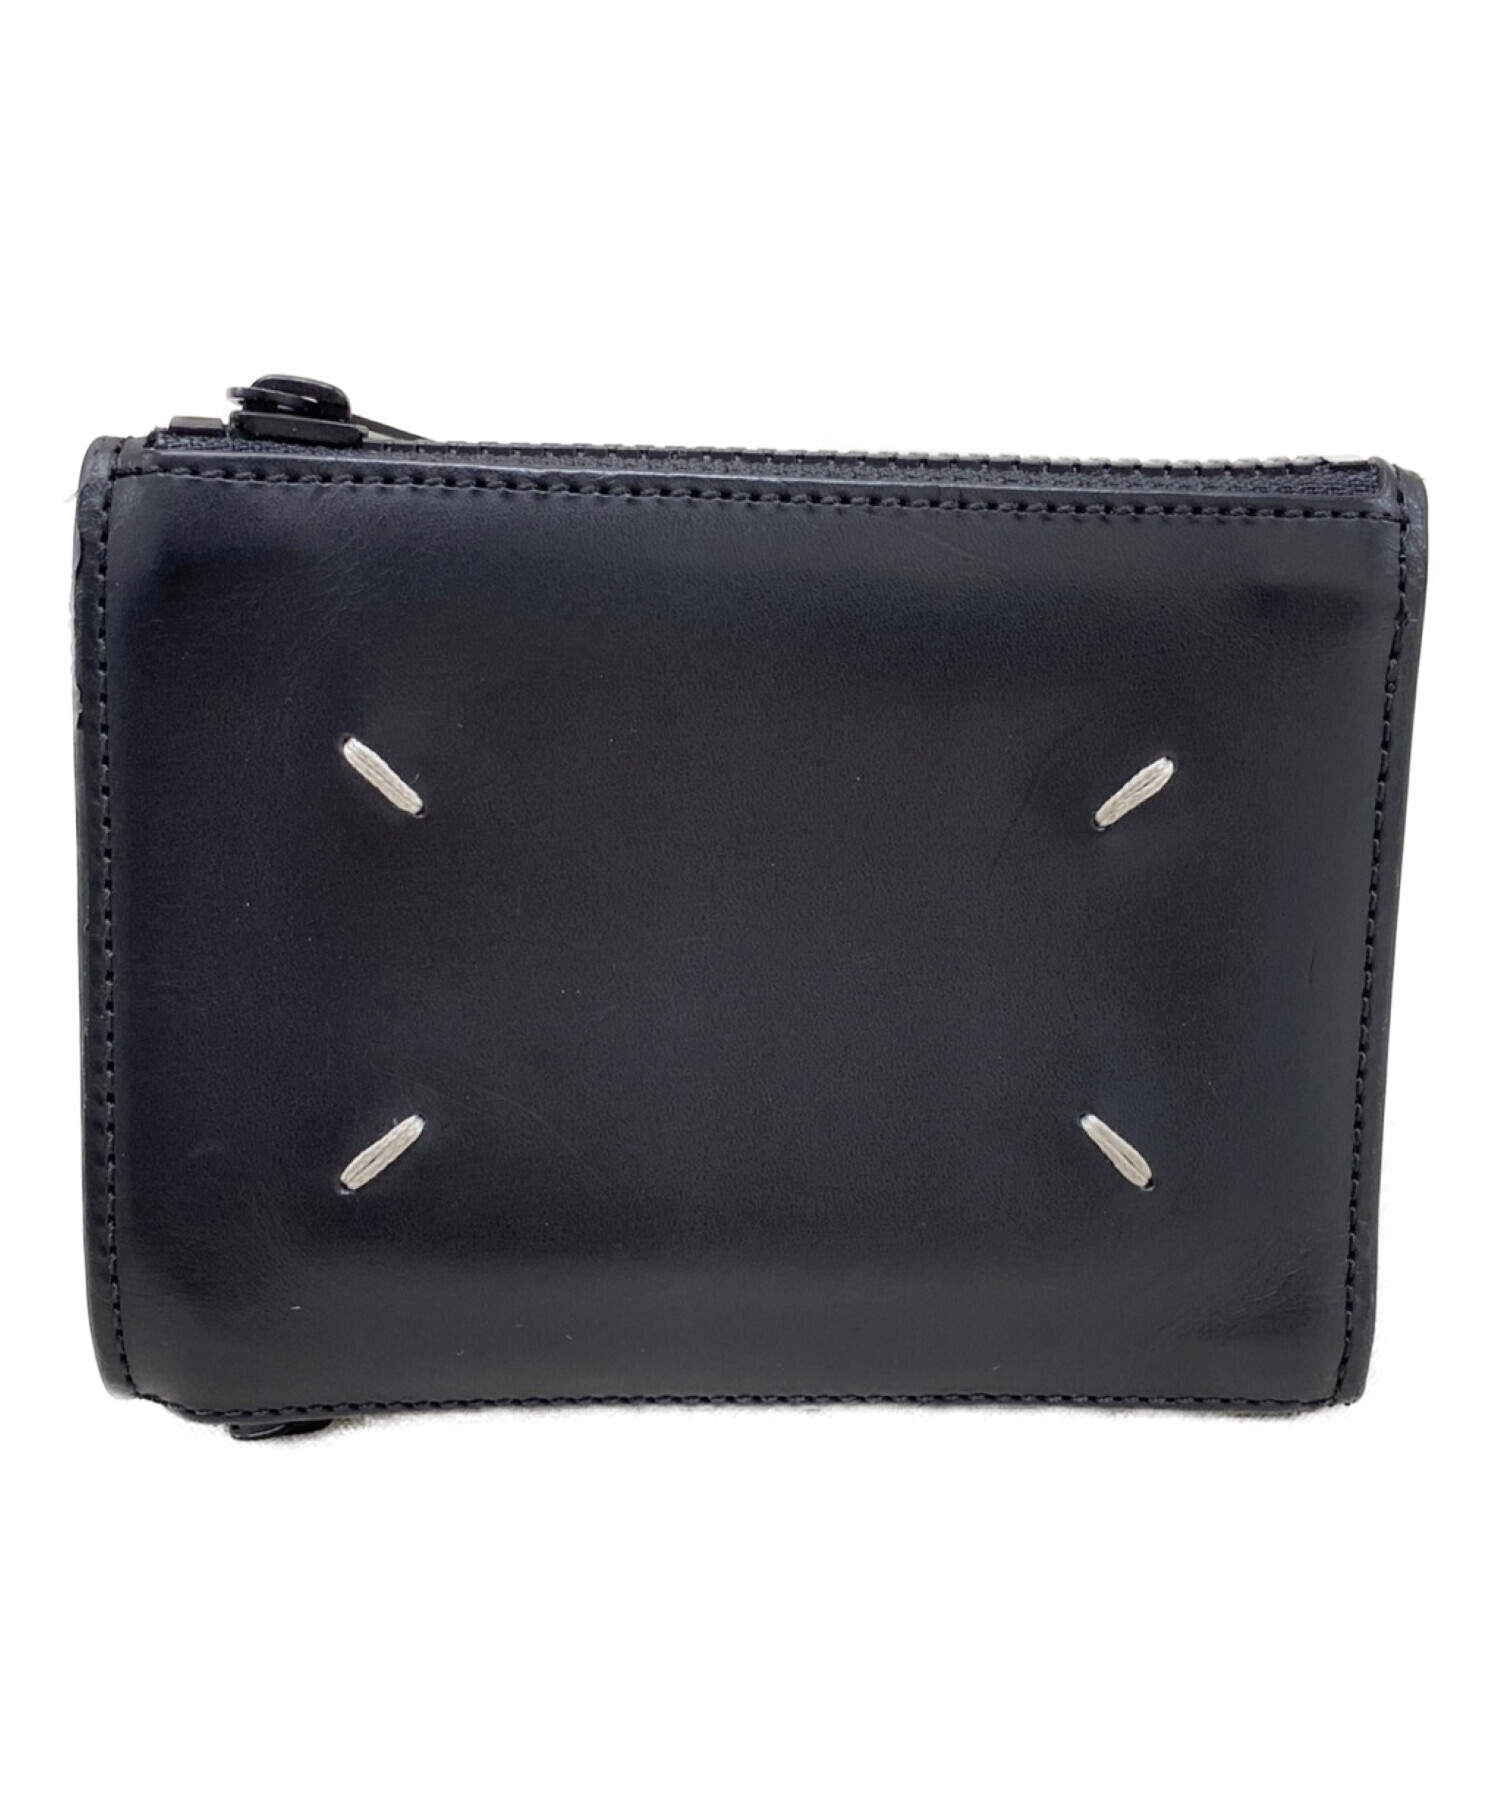 新品 Maison Margiela ブラック 革の財布 メゾンマルジェラ - 小物